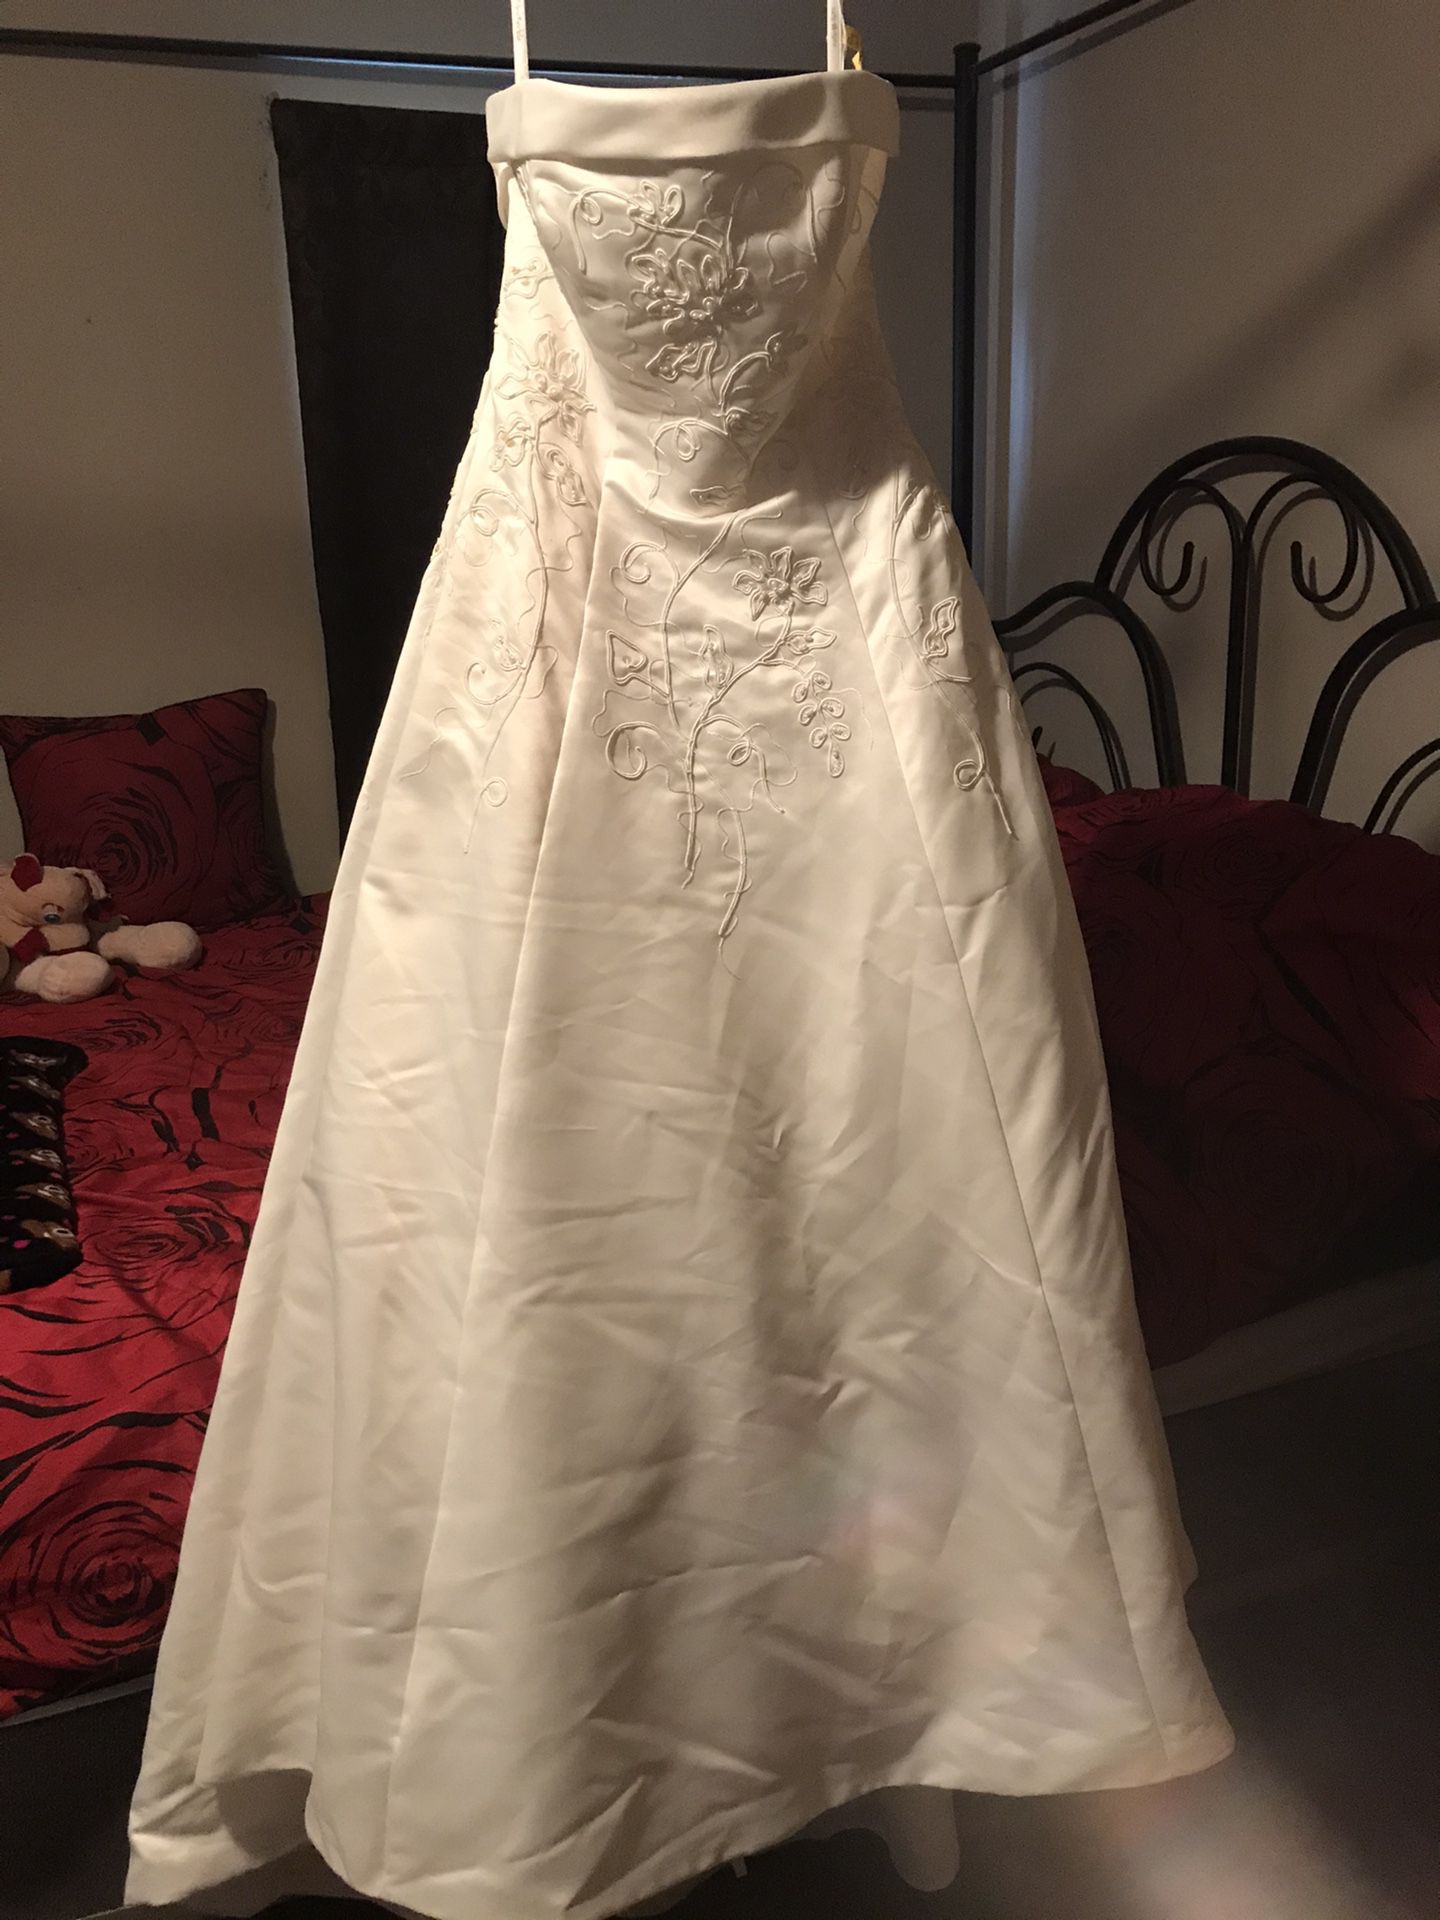 Eden bridal wedding dress reduced again